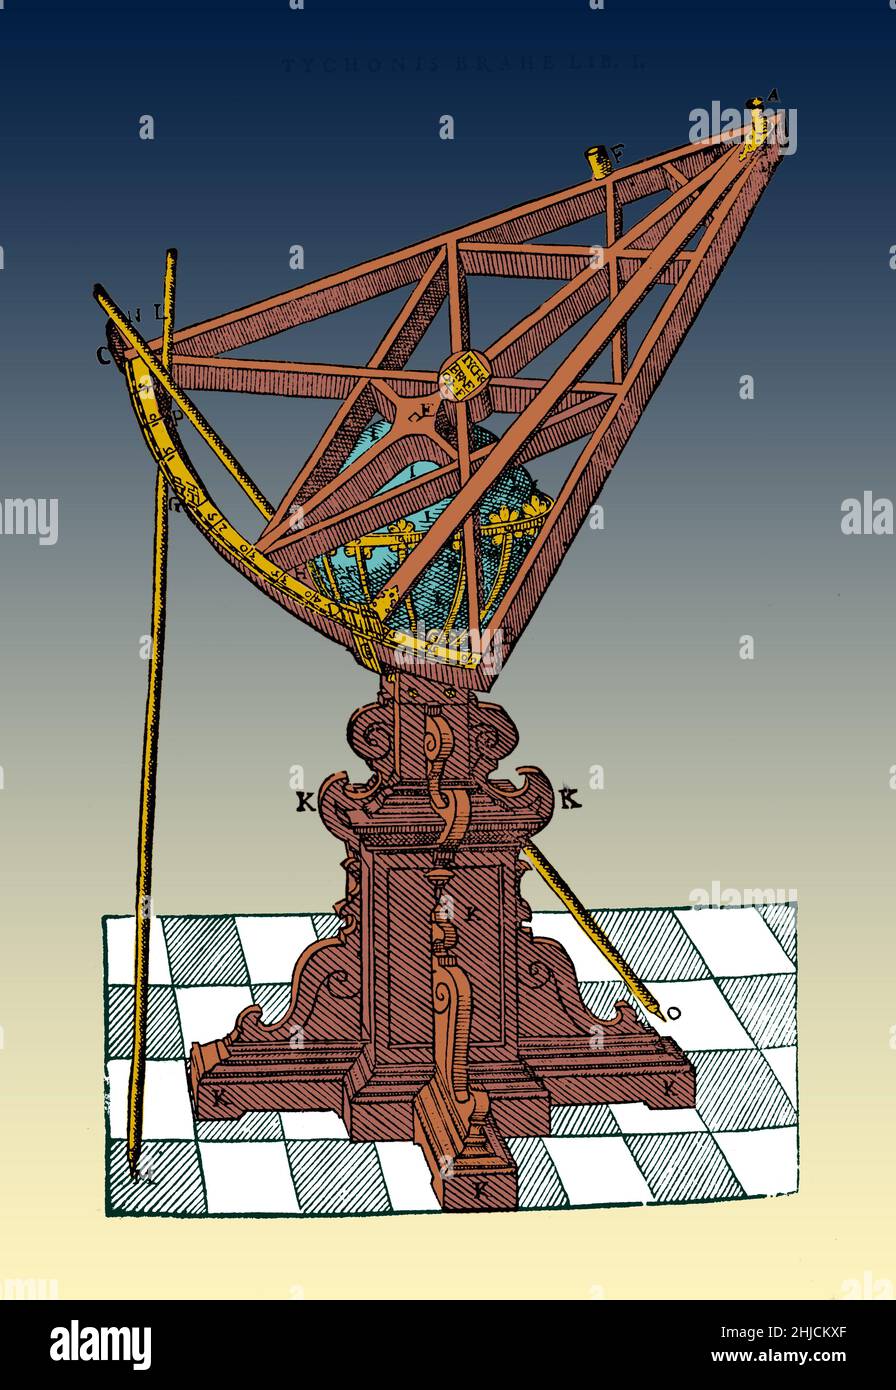 Brahe dreieckige Sextant, etwa 1,6 Meter Radius, wurde im Jahr 1582 gebaut. Wie Tycho des sextanten an Größe zunahm, wurden feste Instrumente, obwohl Tycho's geniale Welt viel für die Vielseitigkeit der Verwendung kleinerer, herkömmliche tragbare Sextanten beibehalten. Tychonis Brahe Astronomiae instauratae progymnasmata: quorum Ahce prima pars De Restitutione motuum Solis et lunae stellarumque inerrantium tractat, et praeterea' de admiranda^ nova Stella anno 1572 exorta^ luculenter Agit, 1602. Der erste Band einer geplanten Arbeit über aktuelle astronomische Phänomene. Der 2. Band hatte gedruckt worden und Priv Stockfoto